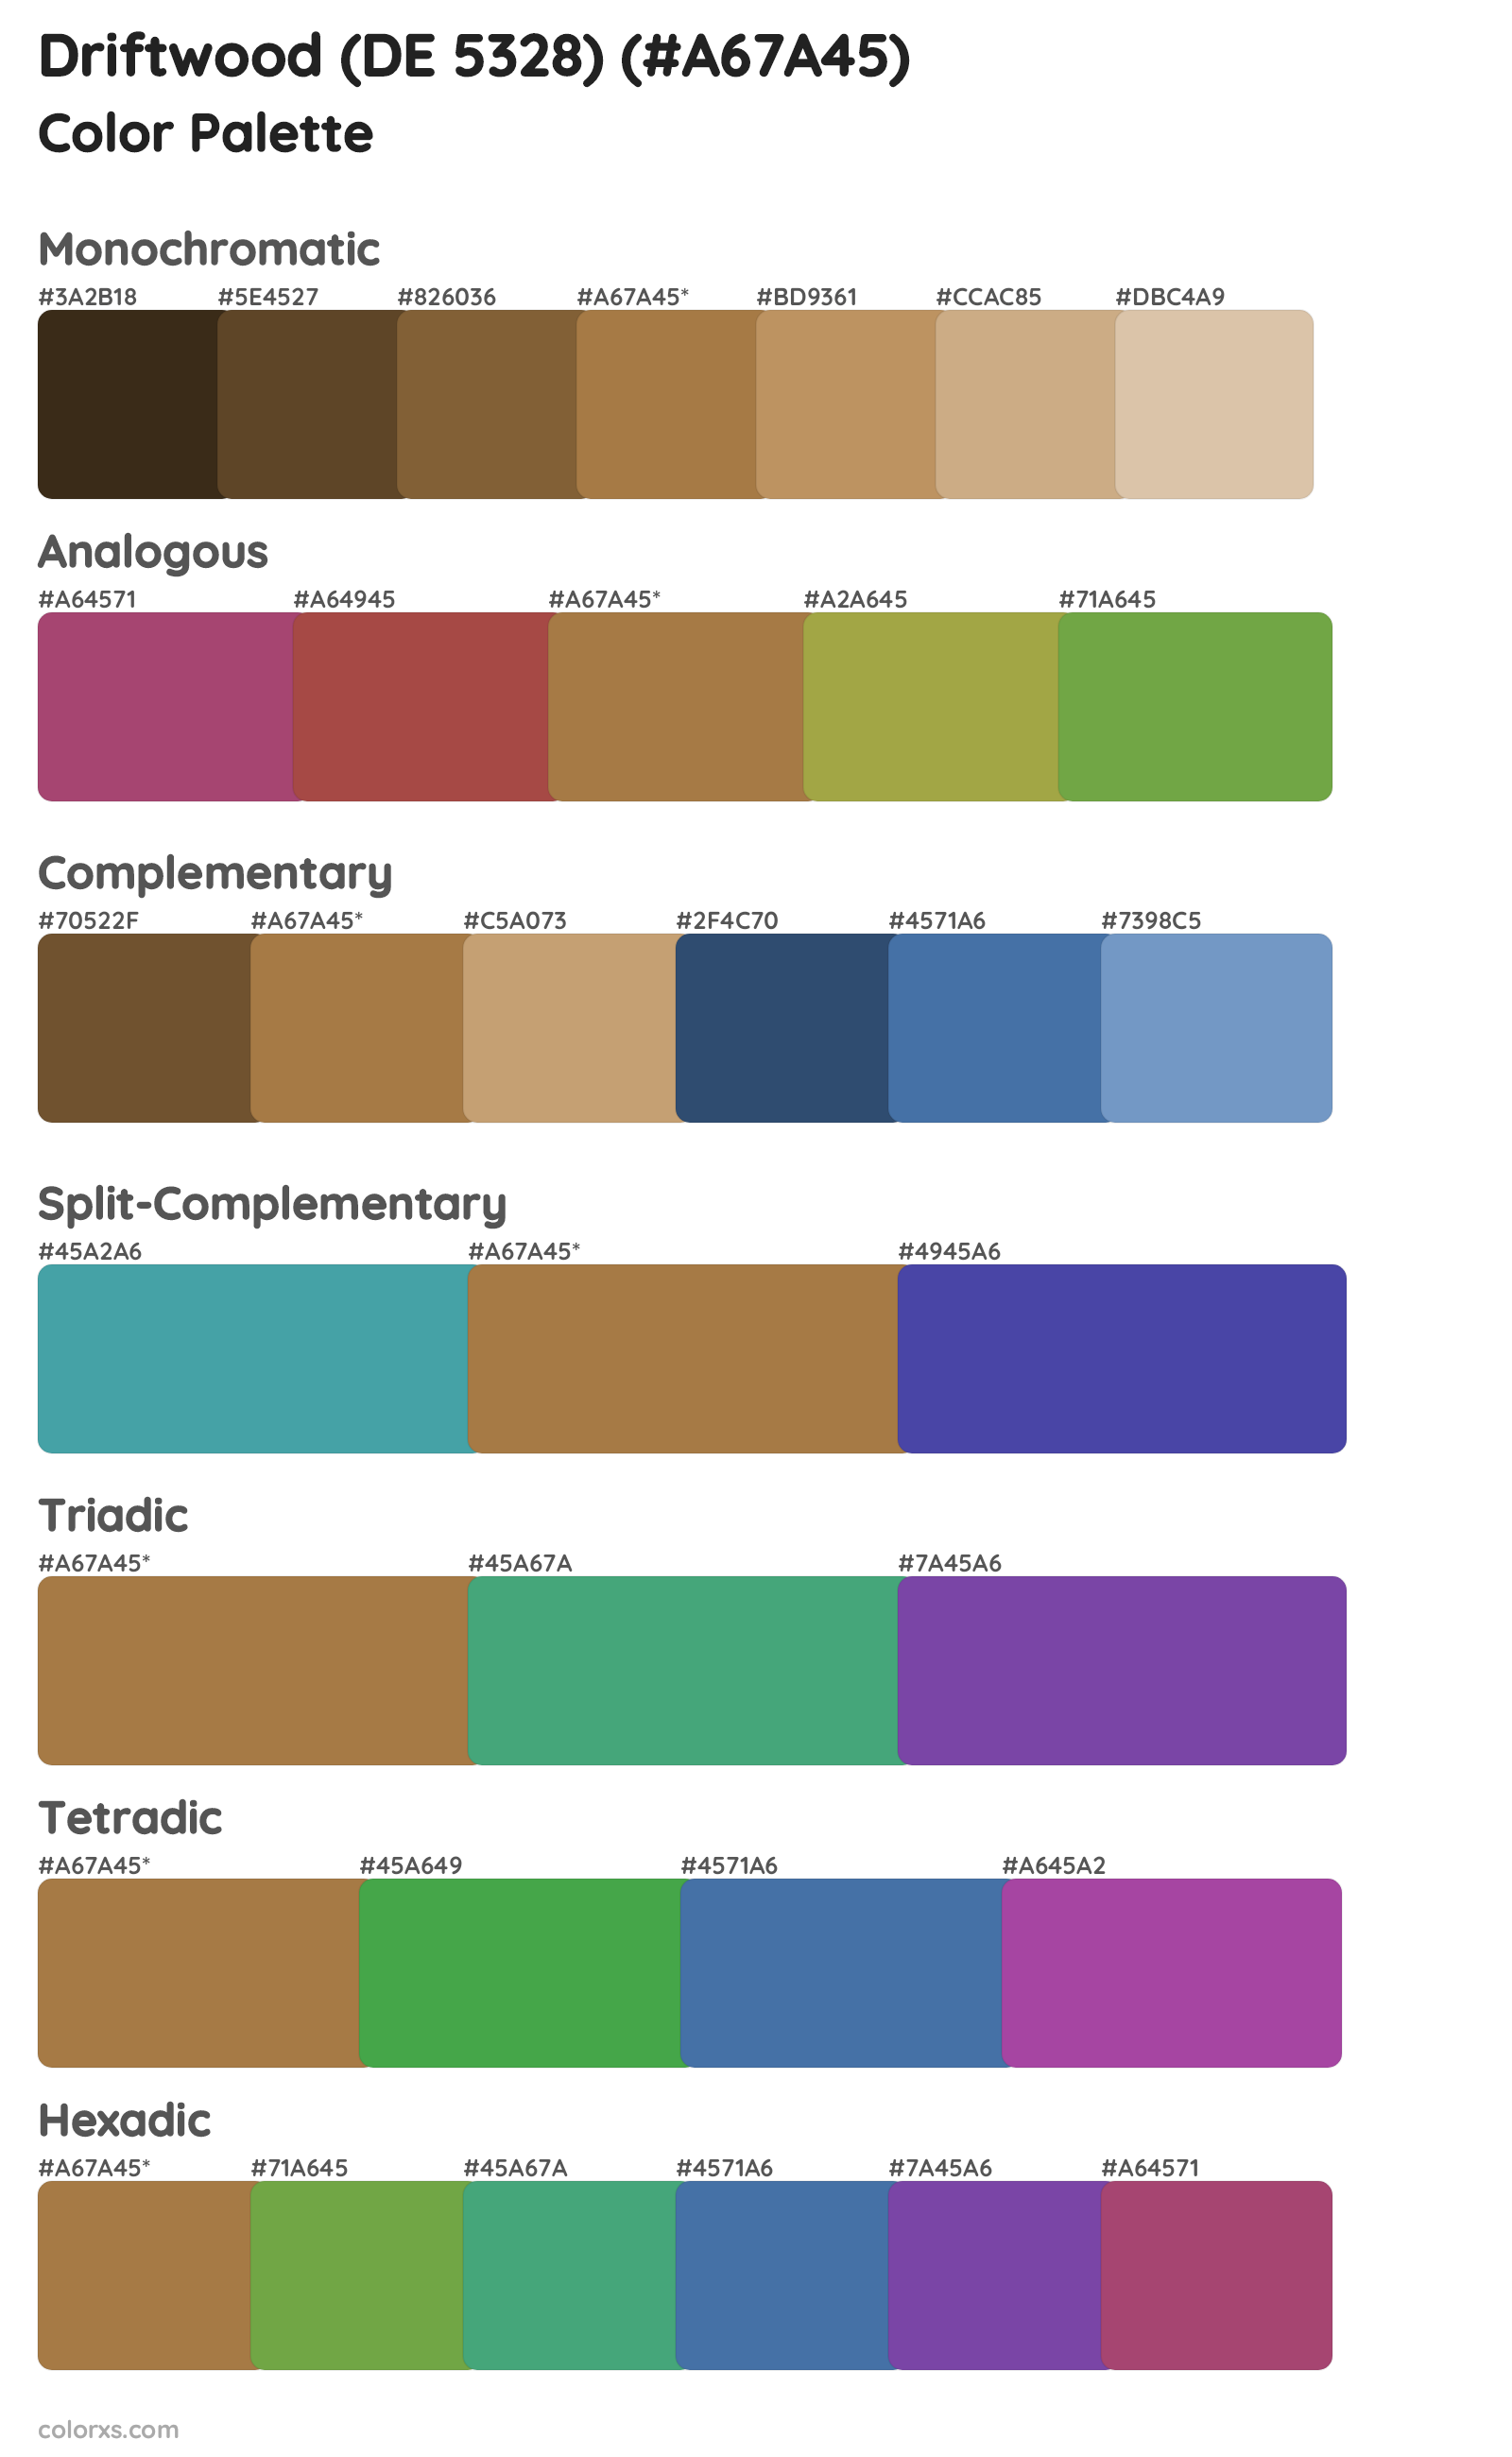 Driftwood (DE 5328) Color Scheme Palettes